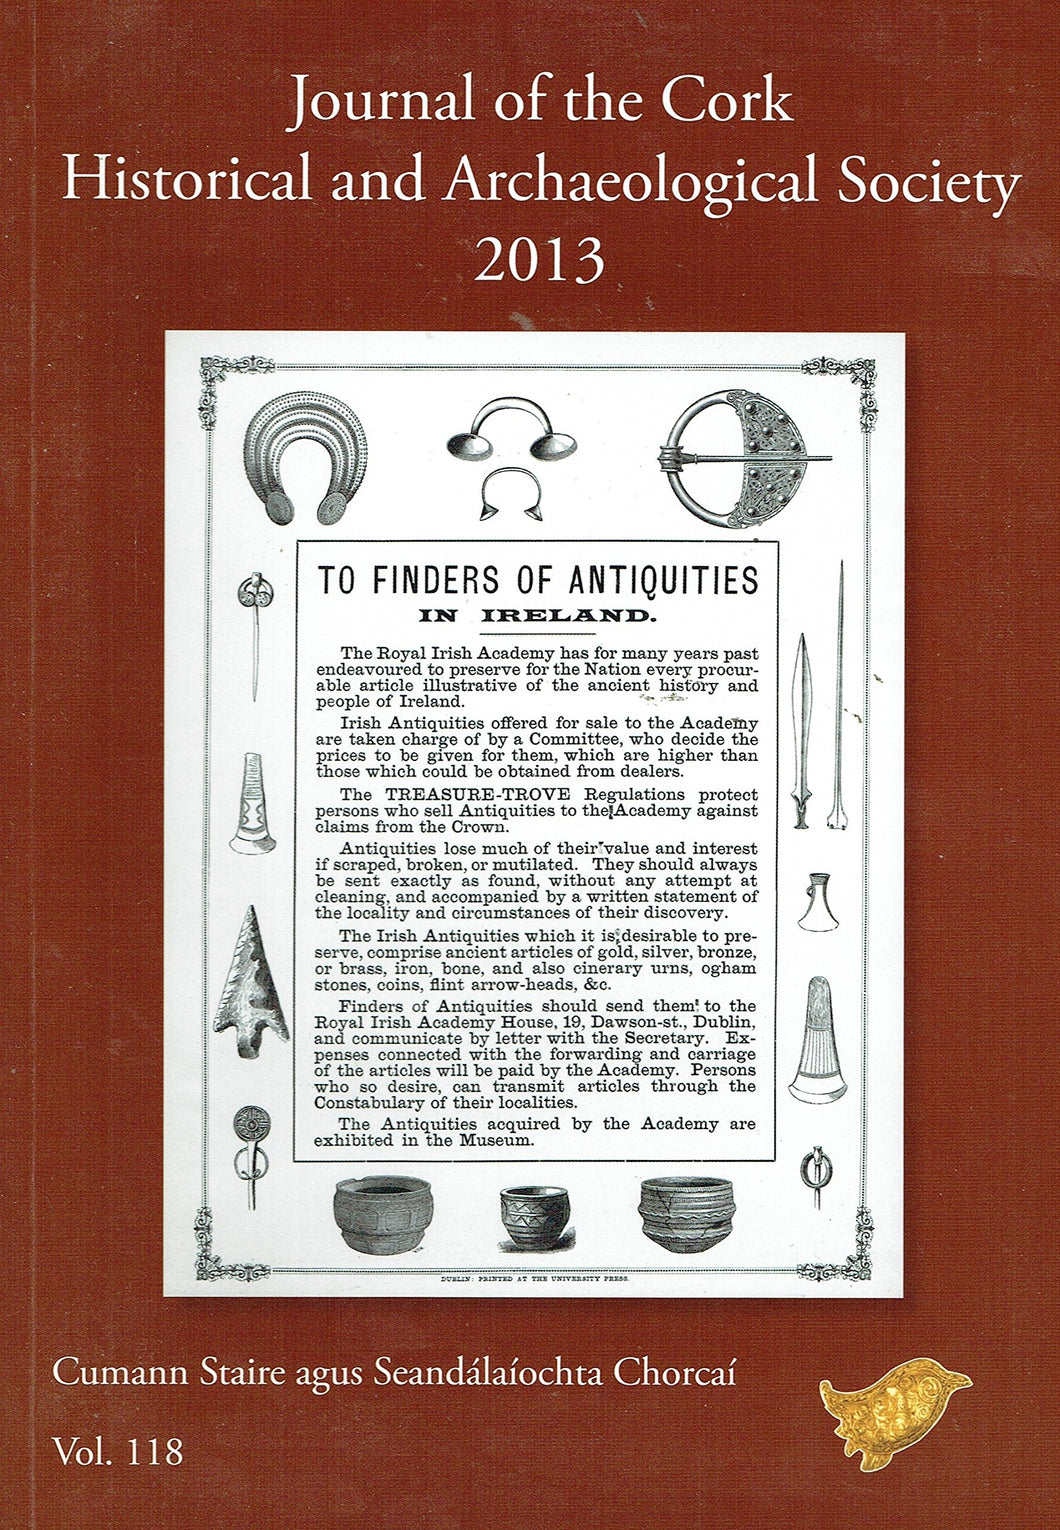 Journal of the Cork Historical and Archaeological Society 2013, Vol. 118 - Cumann Staire agus Seandálaíochta Chorcaí